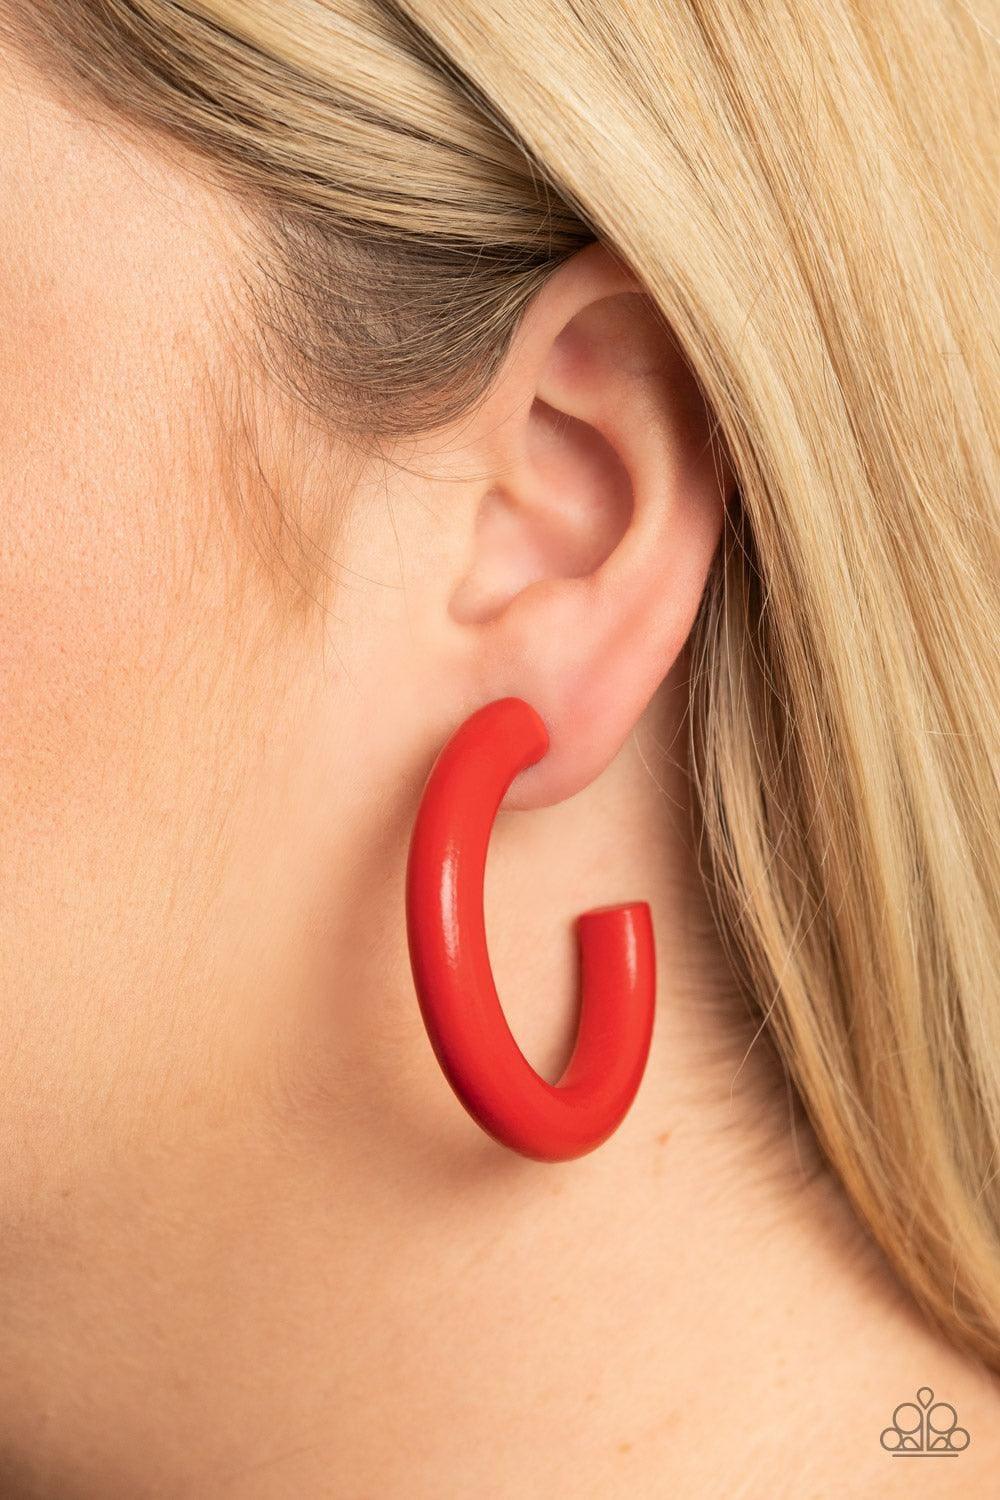 Paparazzi Accessories - Woodsy Wonder - Red Hoop Earrings - Bling by JessieK